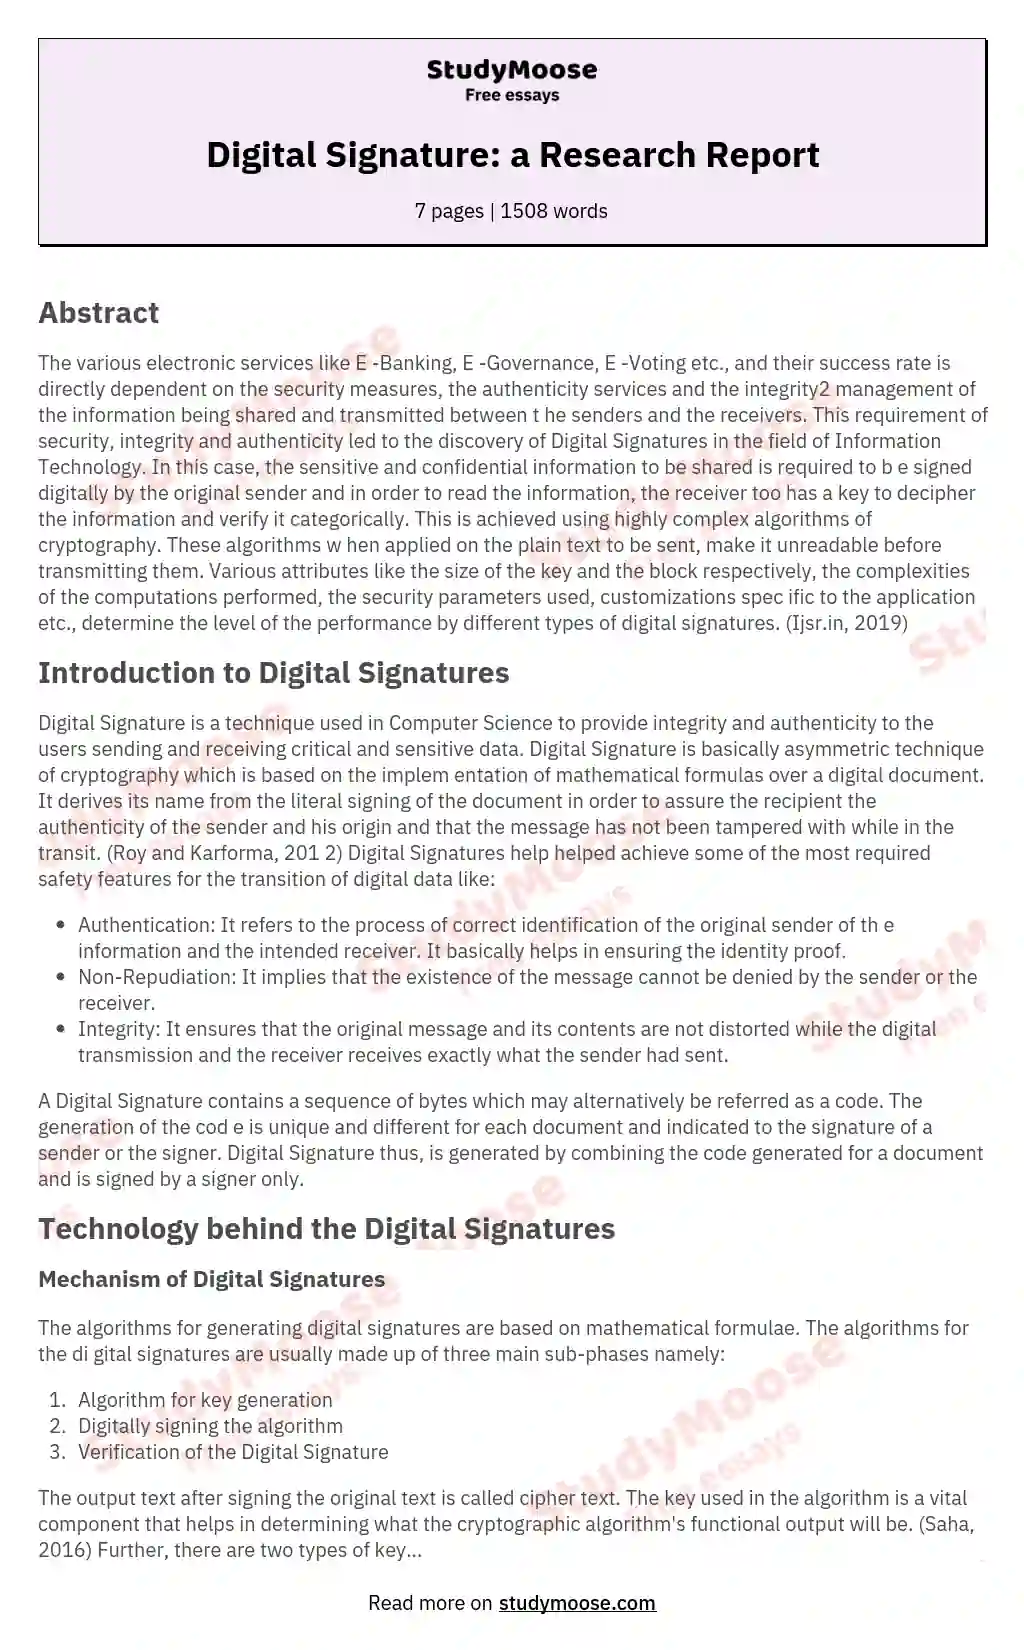 Digital Signature: a Research Report essay